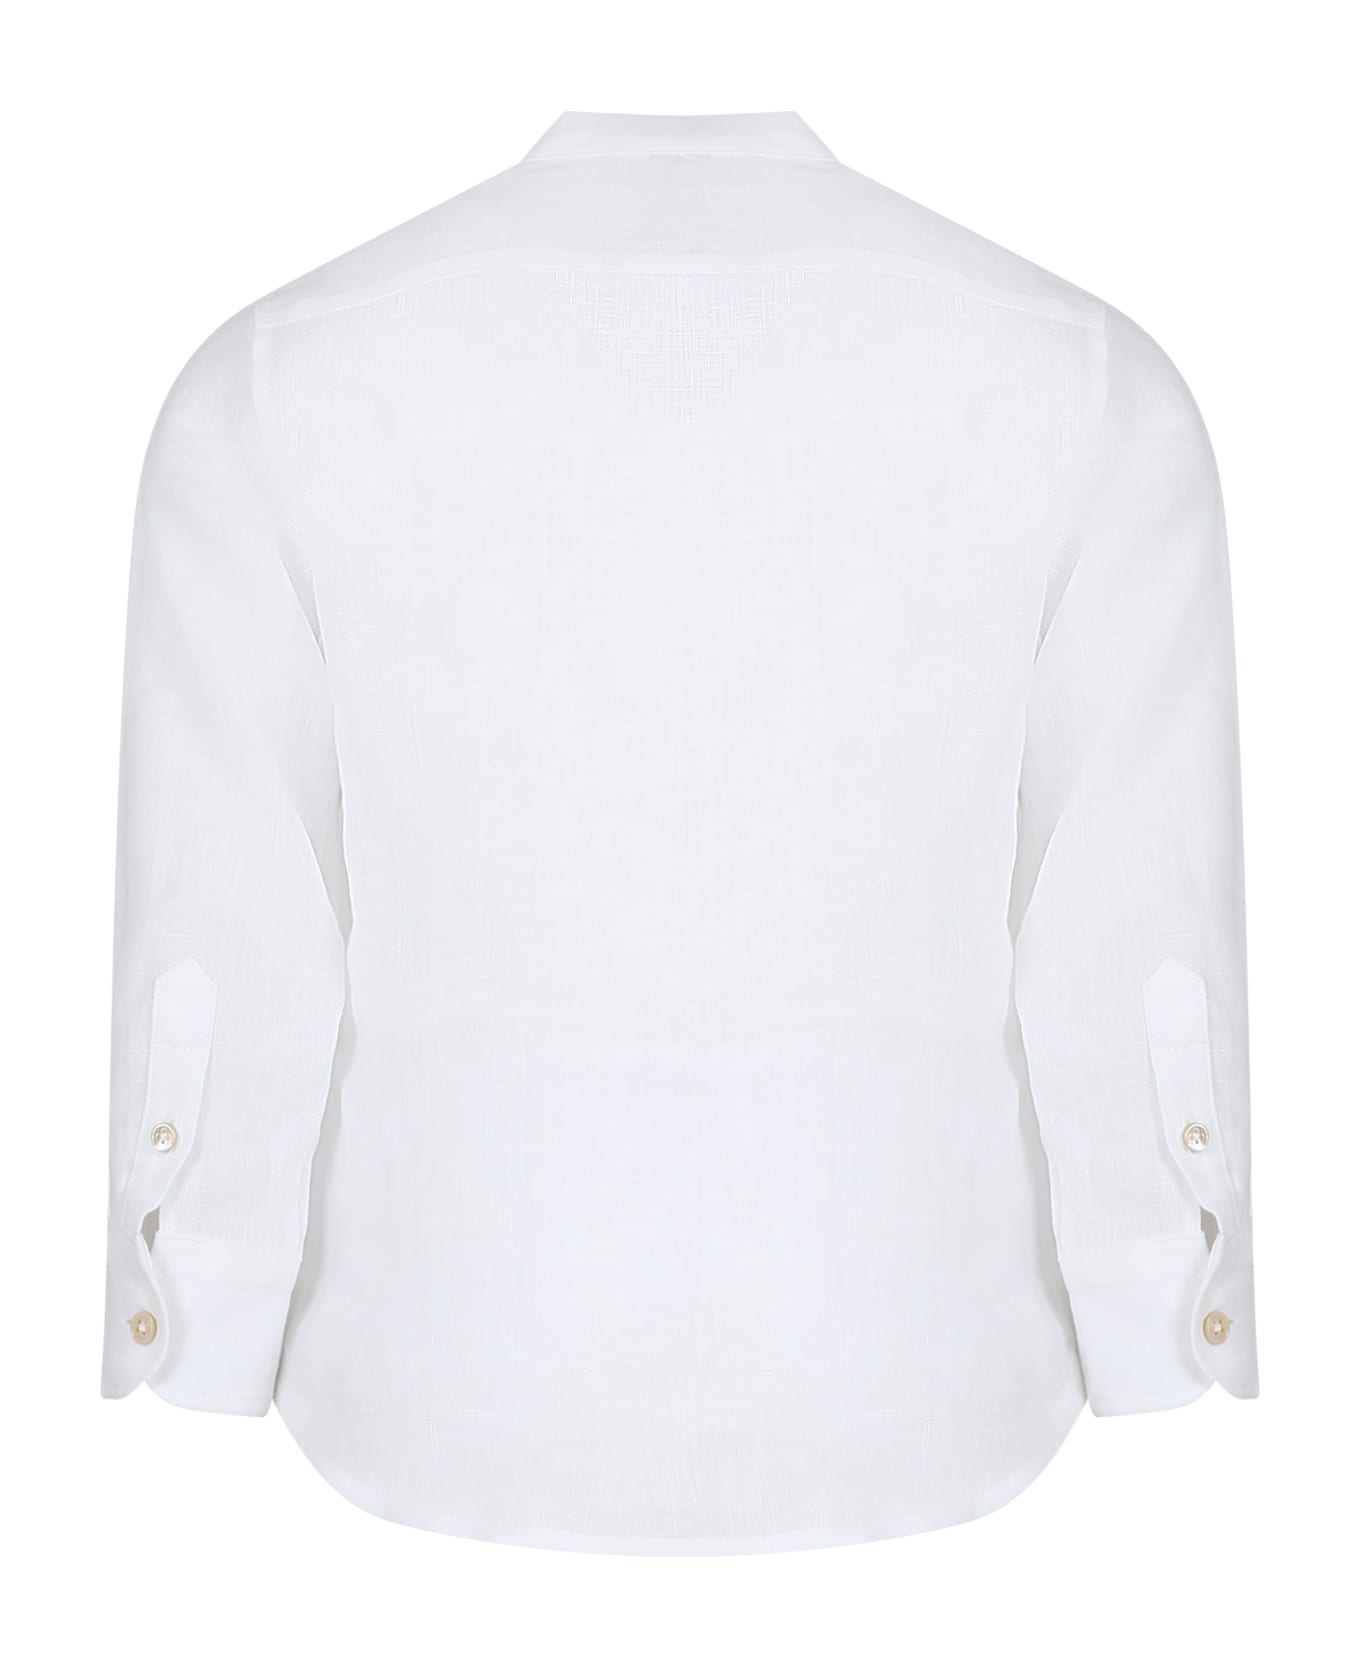 Eleventy White Shirt For Boy With Logo - Ivory